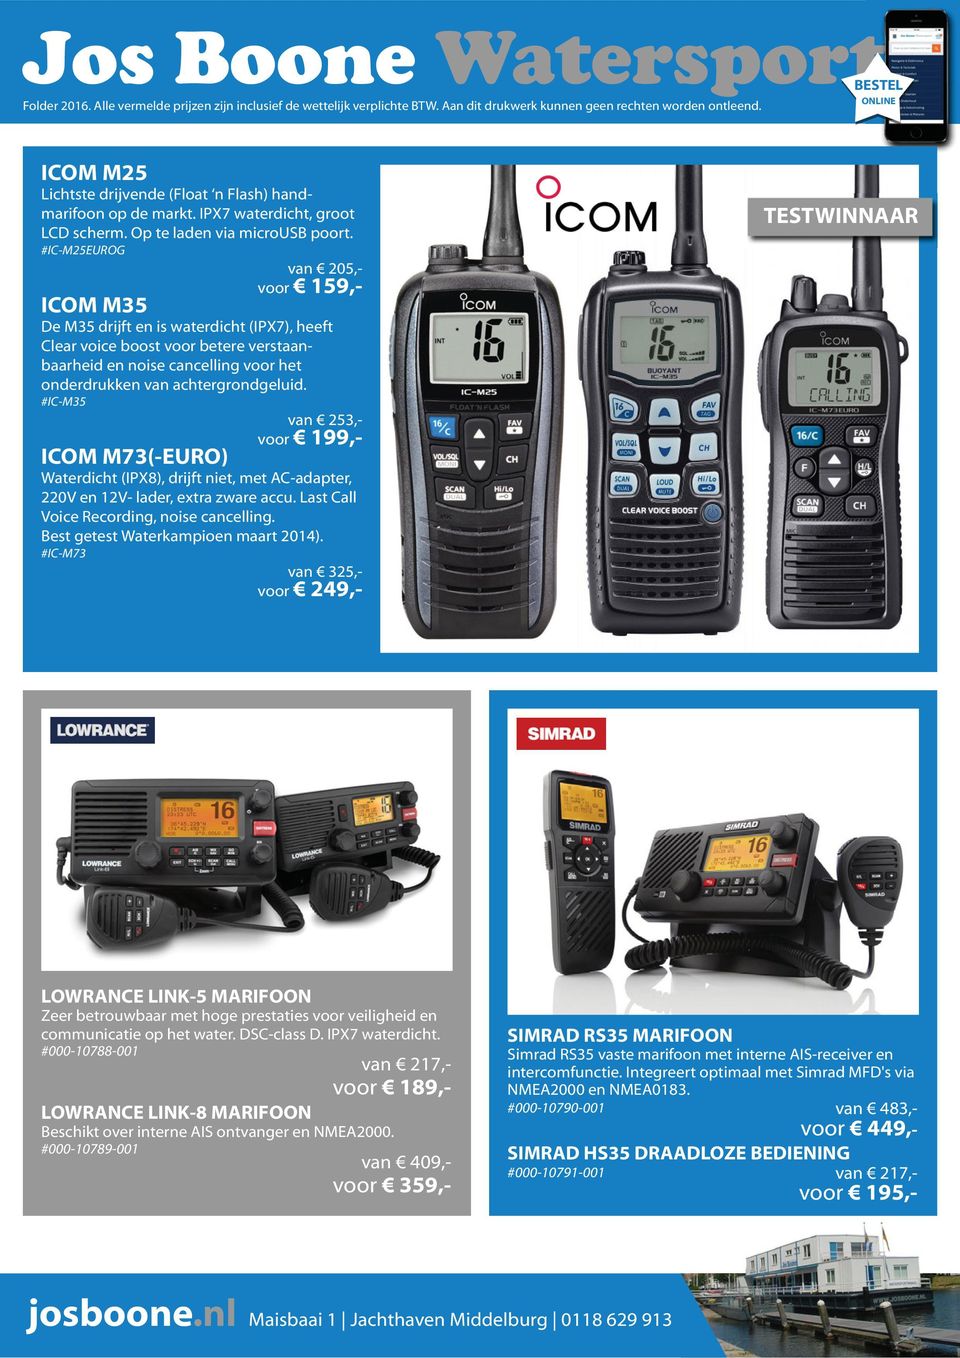 #IC-M35 van 253,- voor 199,- ICOM M73(-EURO) Waterdicht (IPX8), drijft niet, met AC-adapter, 220V en 12V- lader, extra zware accu. Last Call Voice Recording, noise cancelling.